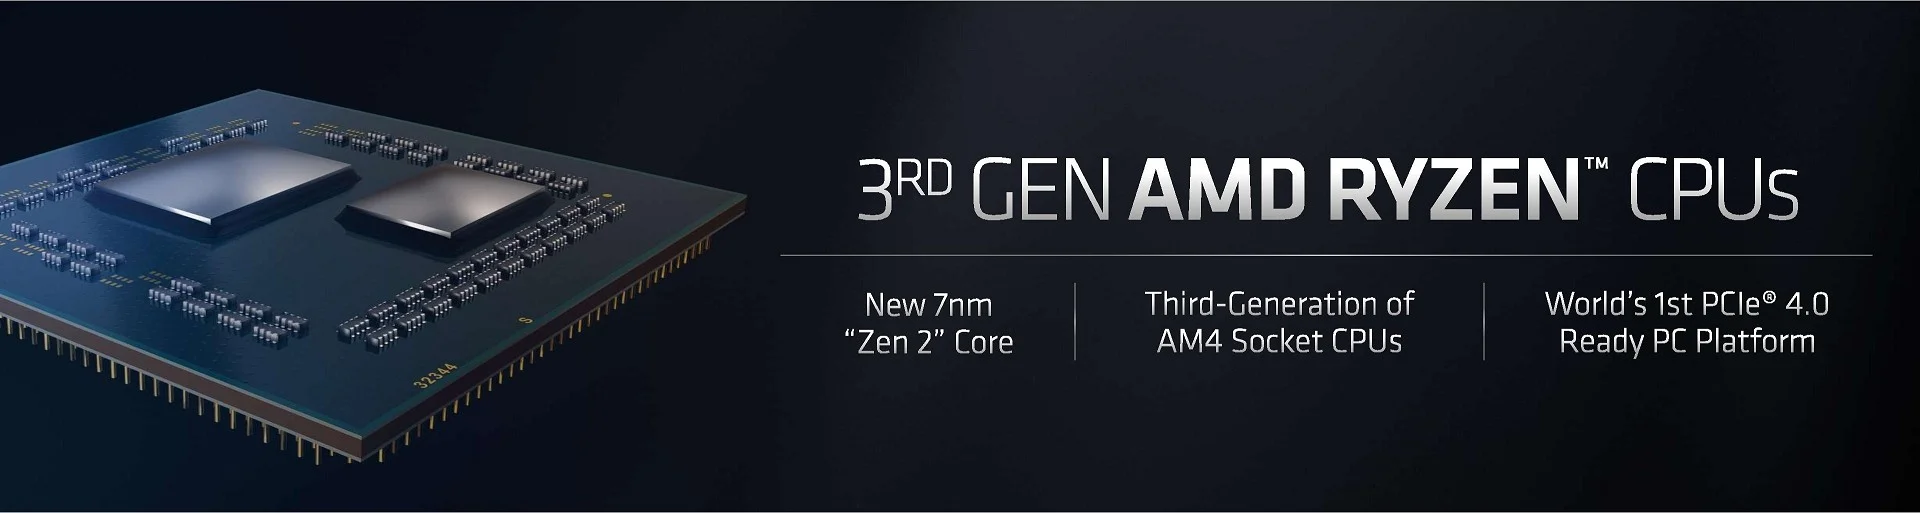 Официально: процессоры Ryzen третьего поколения выпустят 7 июля - фото 1